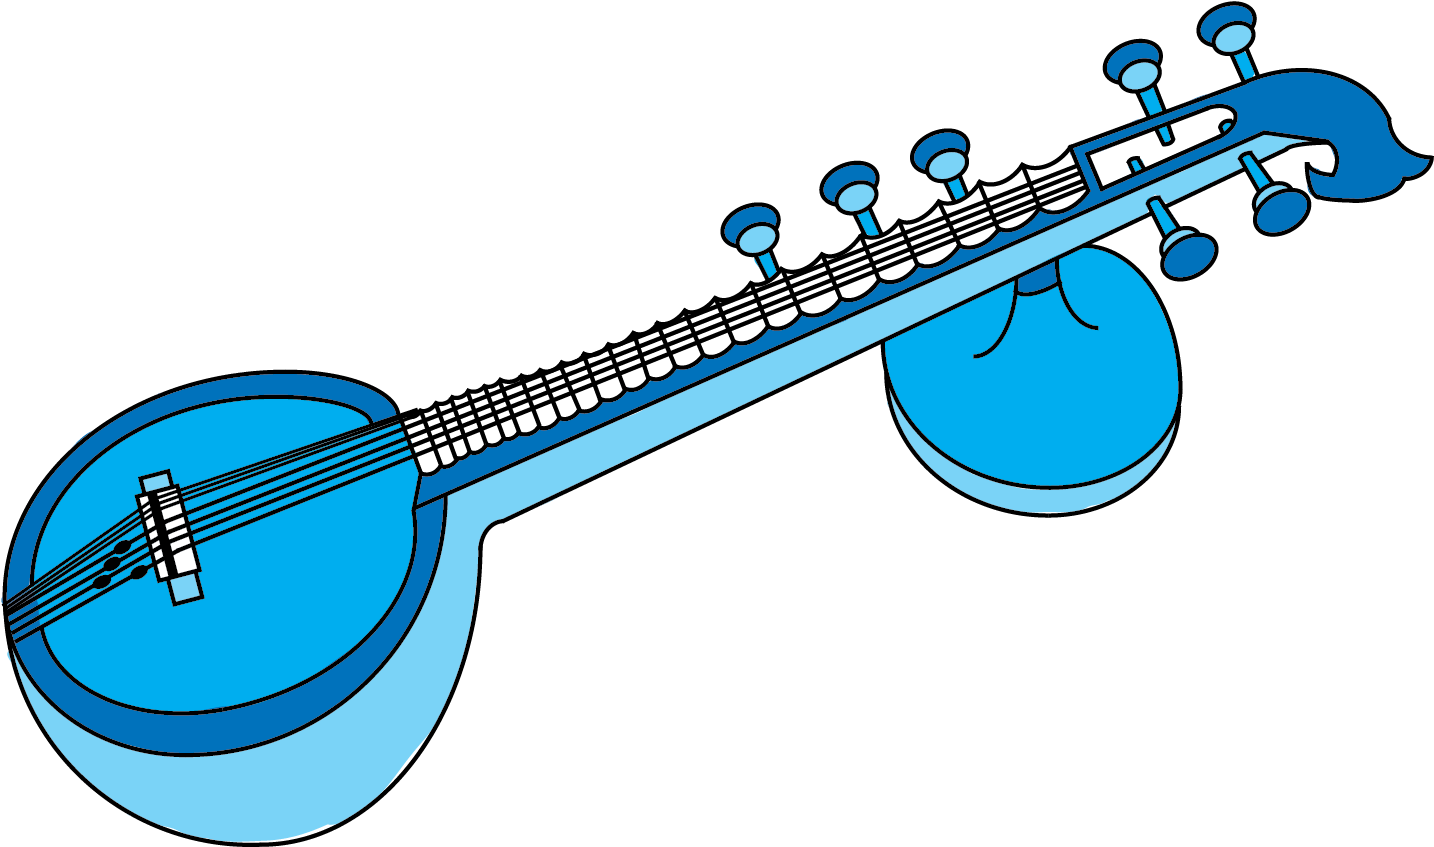 Blue Sitar Vector Illustration PNG image